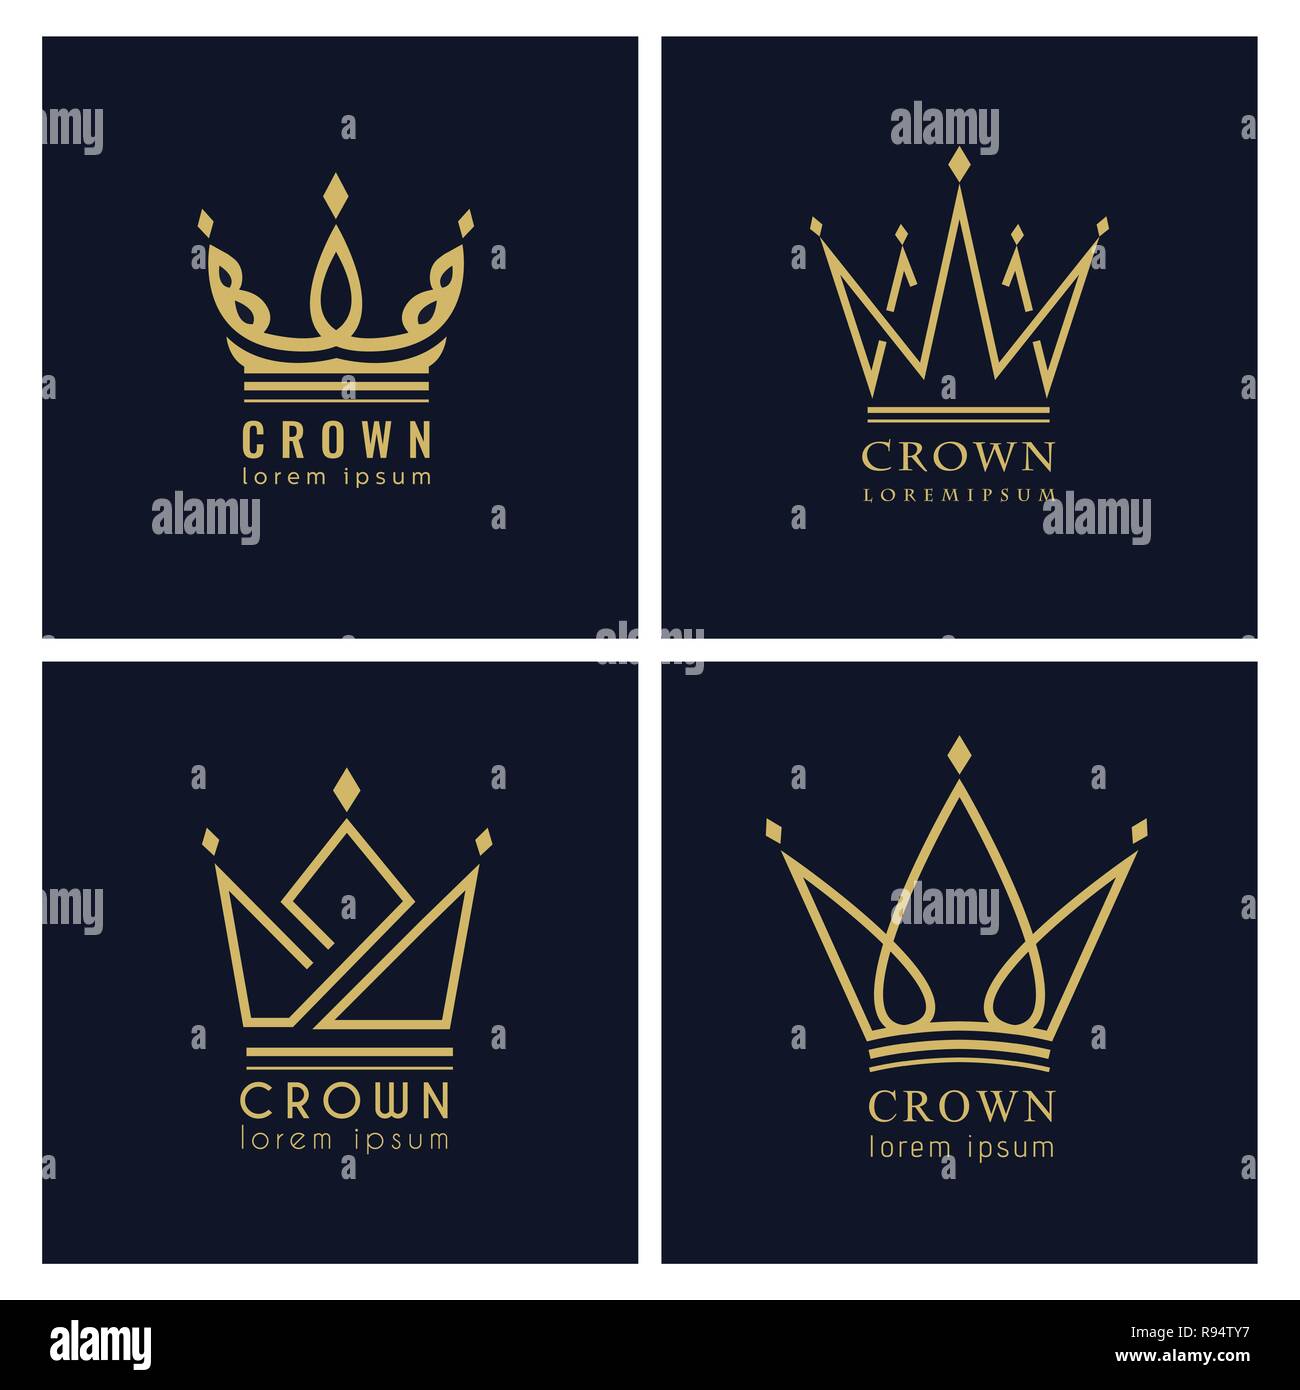 Vintage Crown Logo Royal King Queen abstract Logo design vector template. Vector, illustration, eps 10. Stock Vector